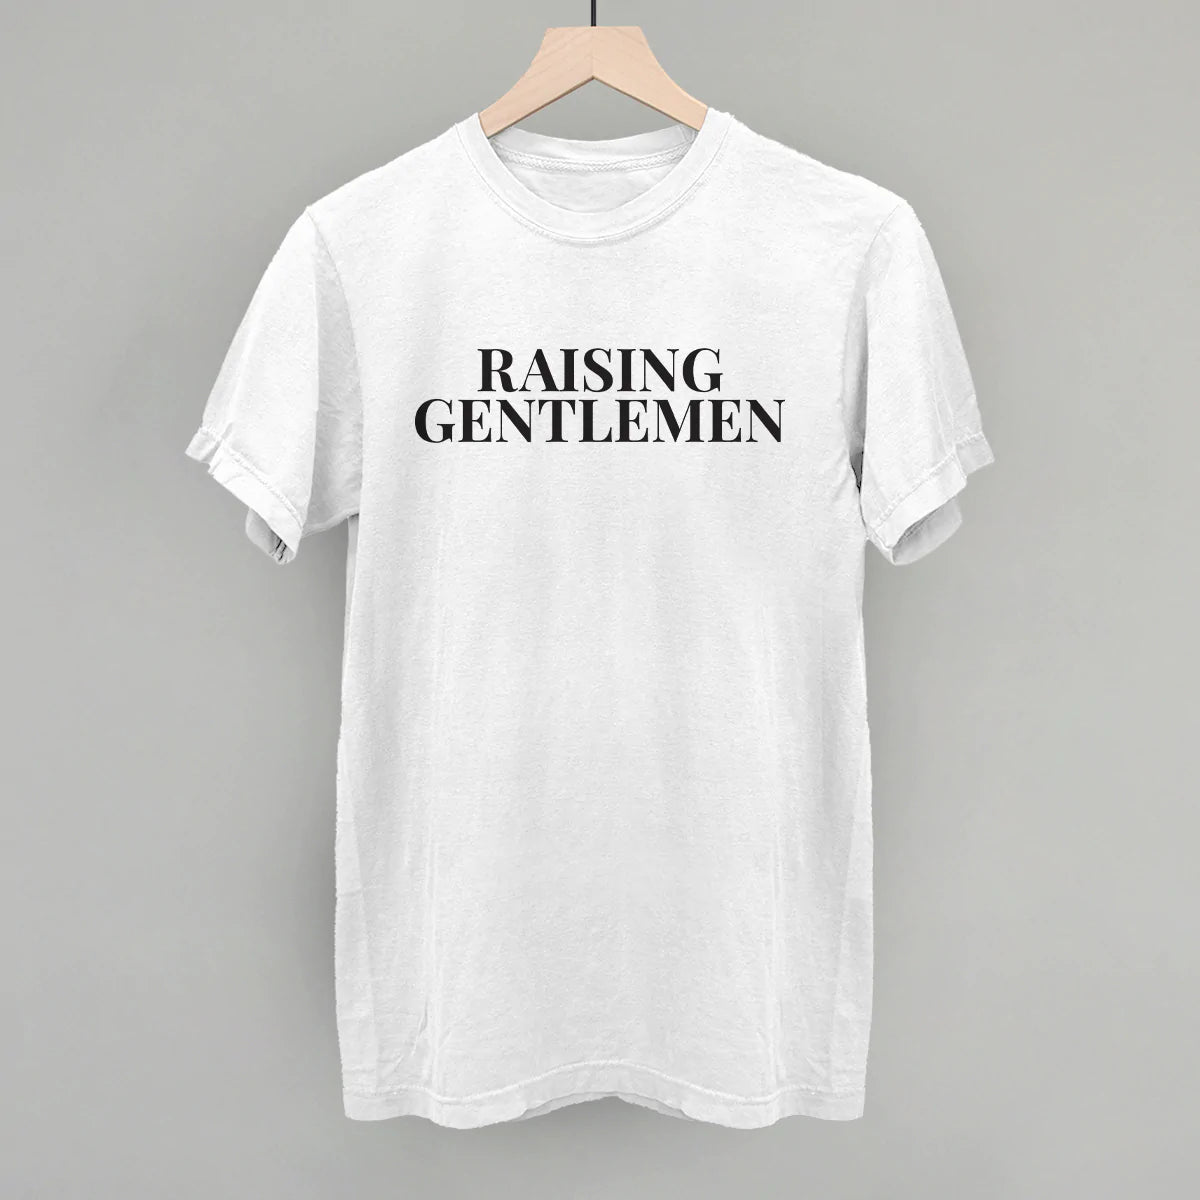 Raising Gentlemen